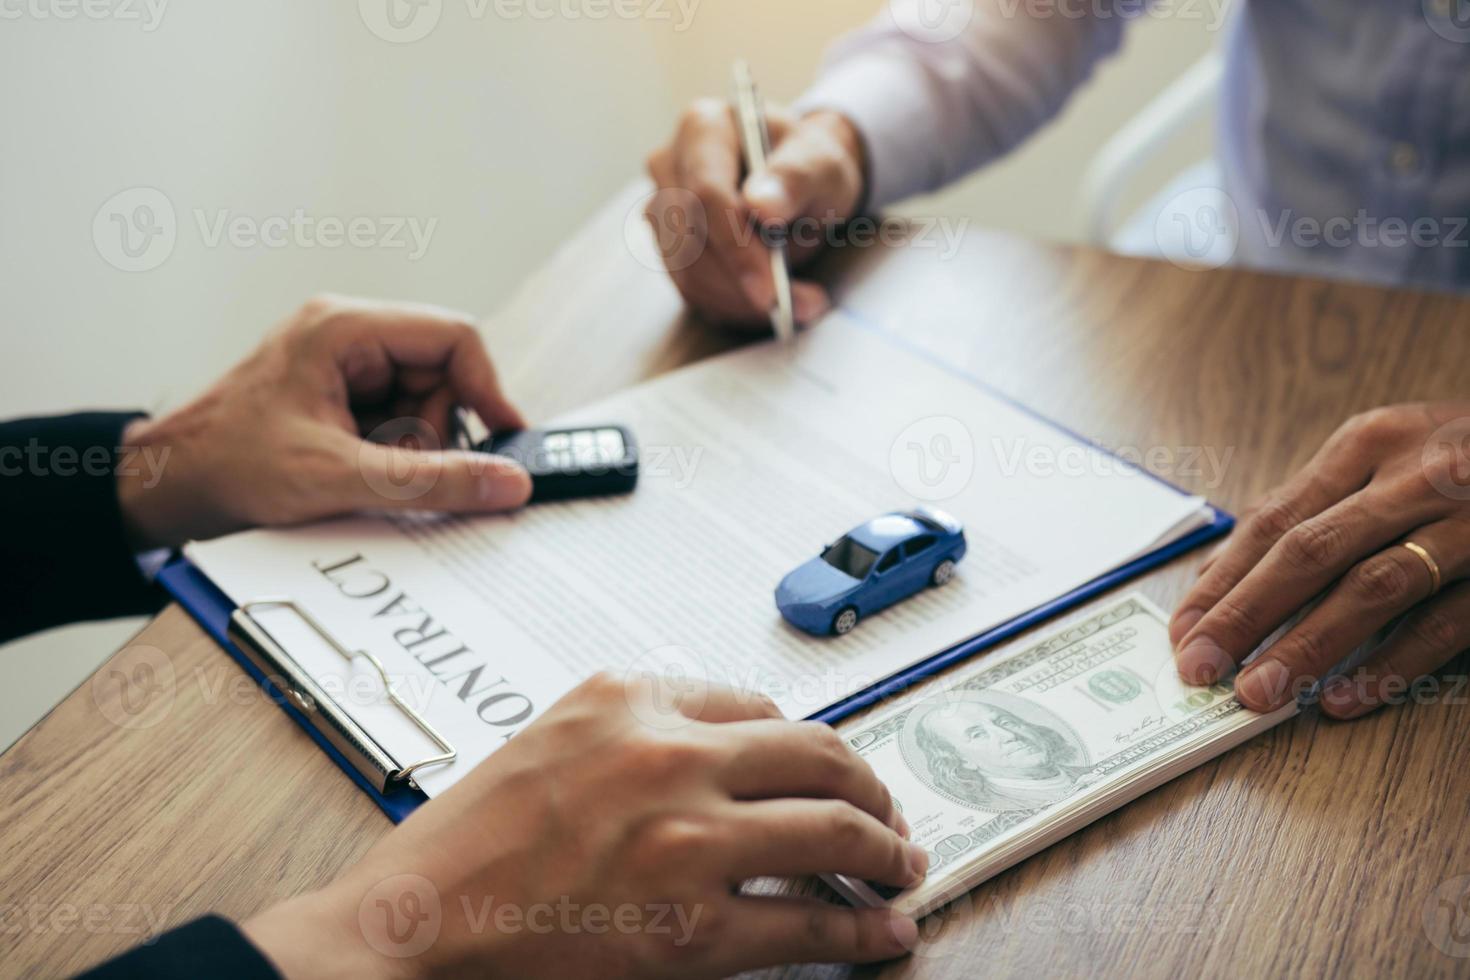 les acheteurs de voitures neuves signent un contrat avec un vendeur de voitures dans la salle d'exposition le jour de la réception de la voiture et de la remise de l'argent à l'employé. photo